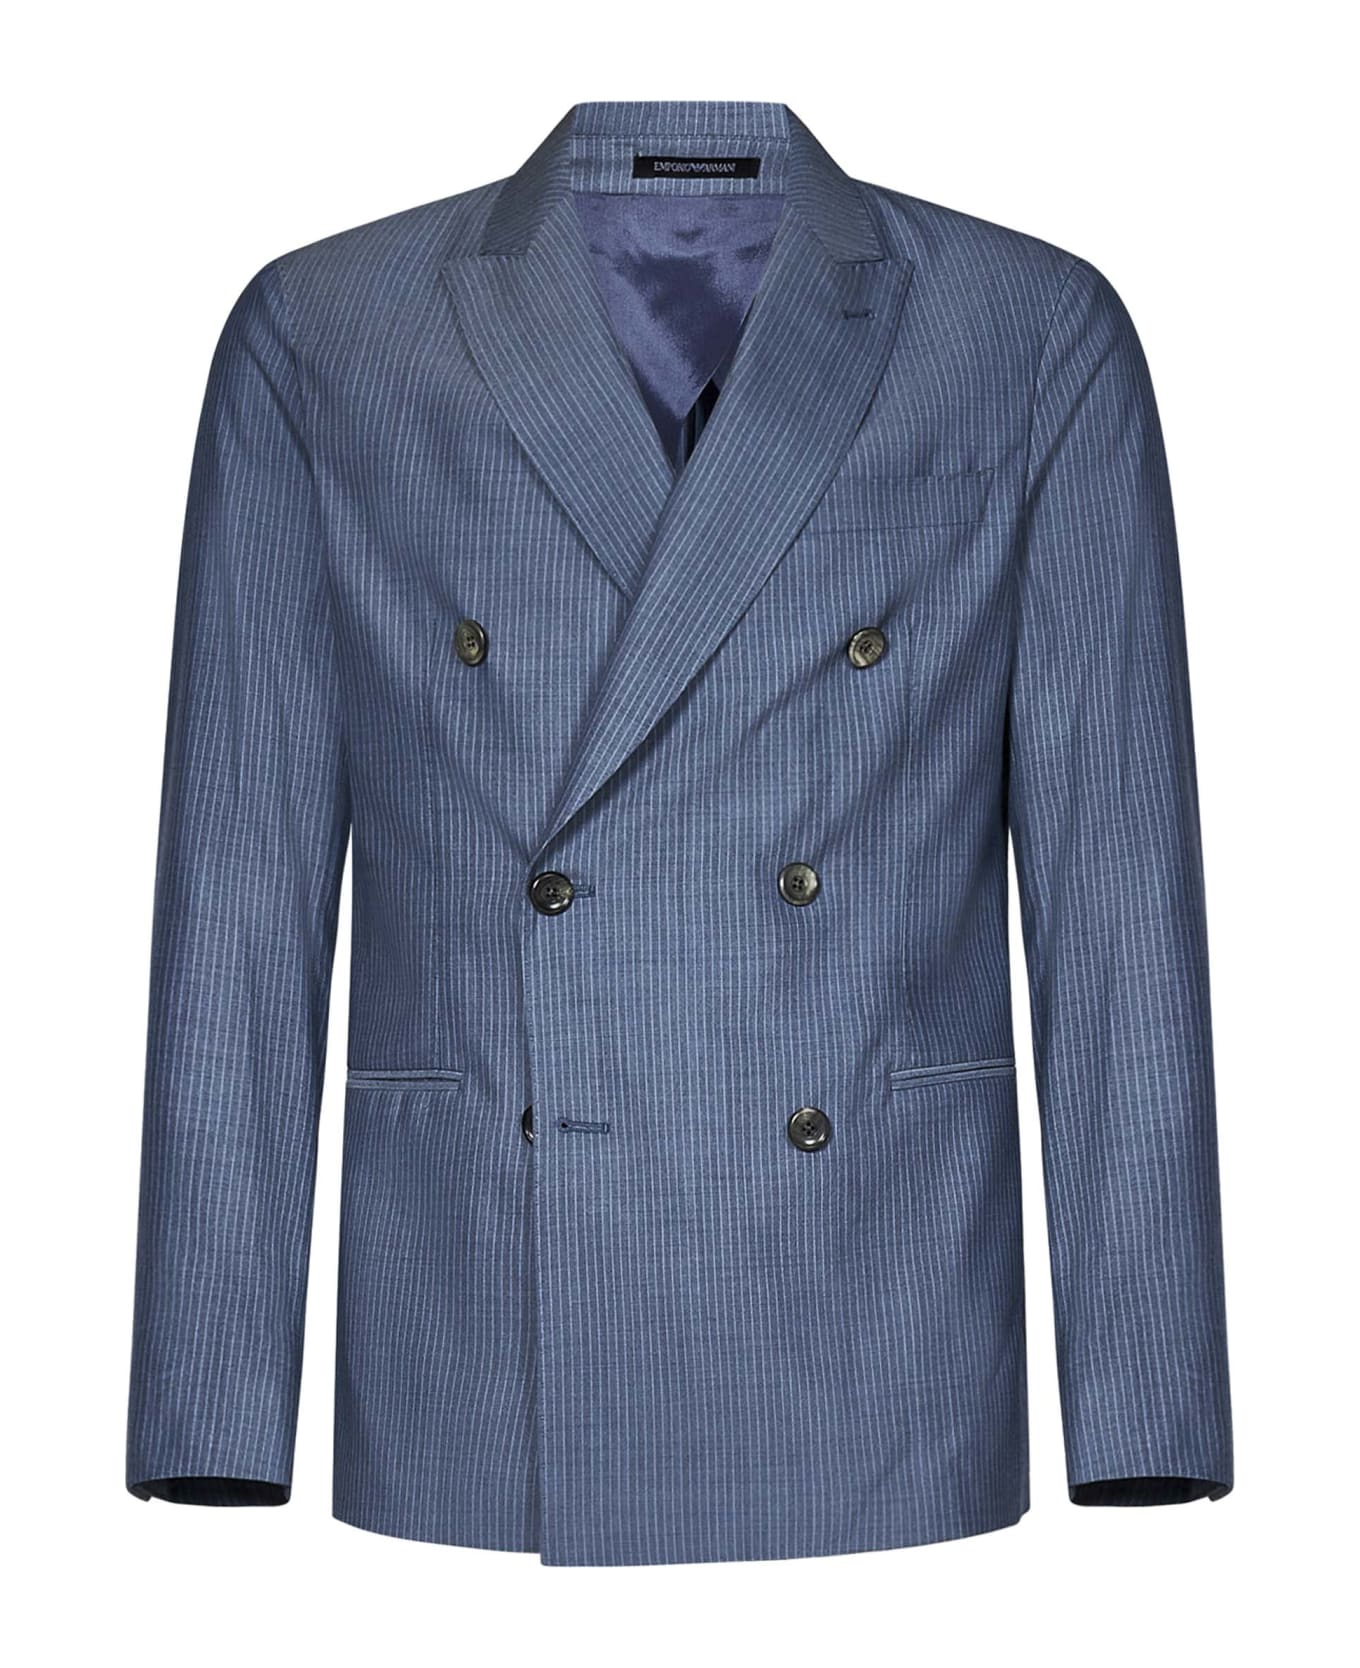 Emporio Armani Suit - Light blue